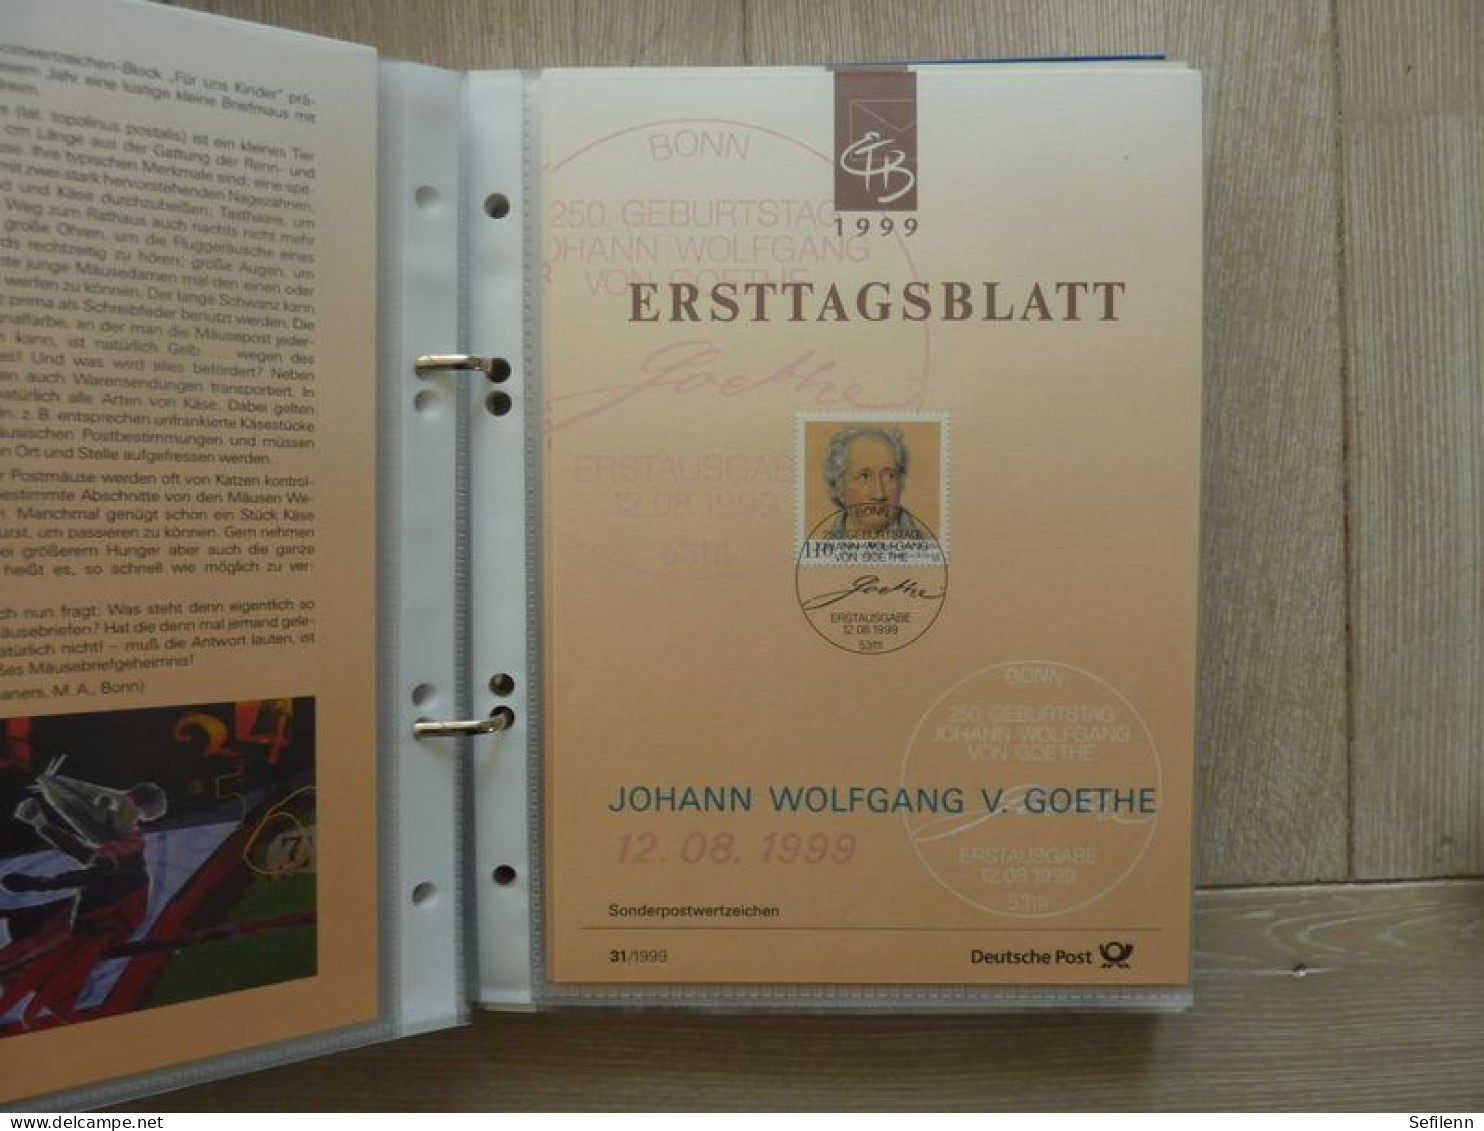 1990/2000 Deutschland Bundespost 530x Ersttagblatt (not complete) in 8 binders